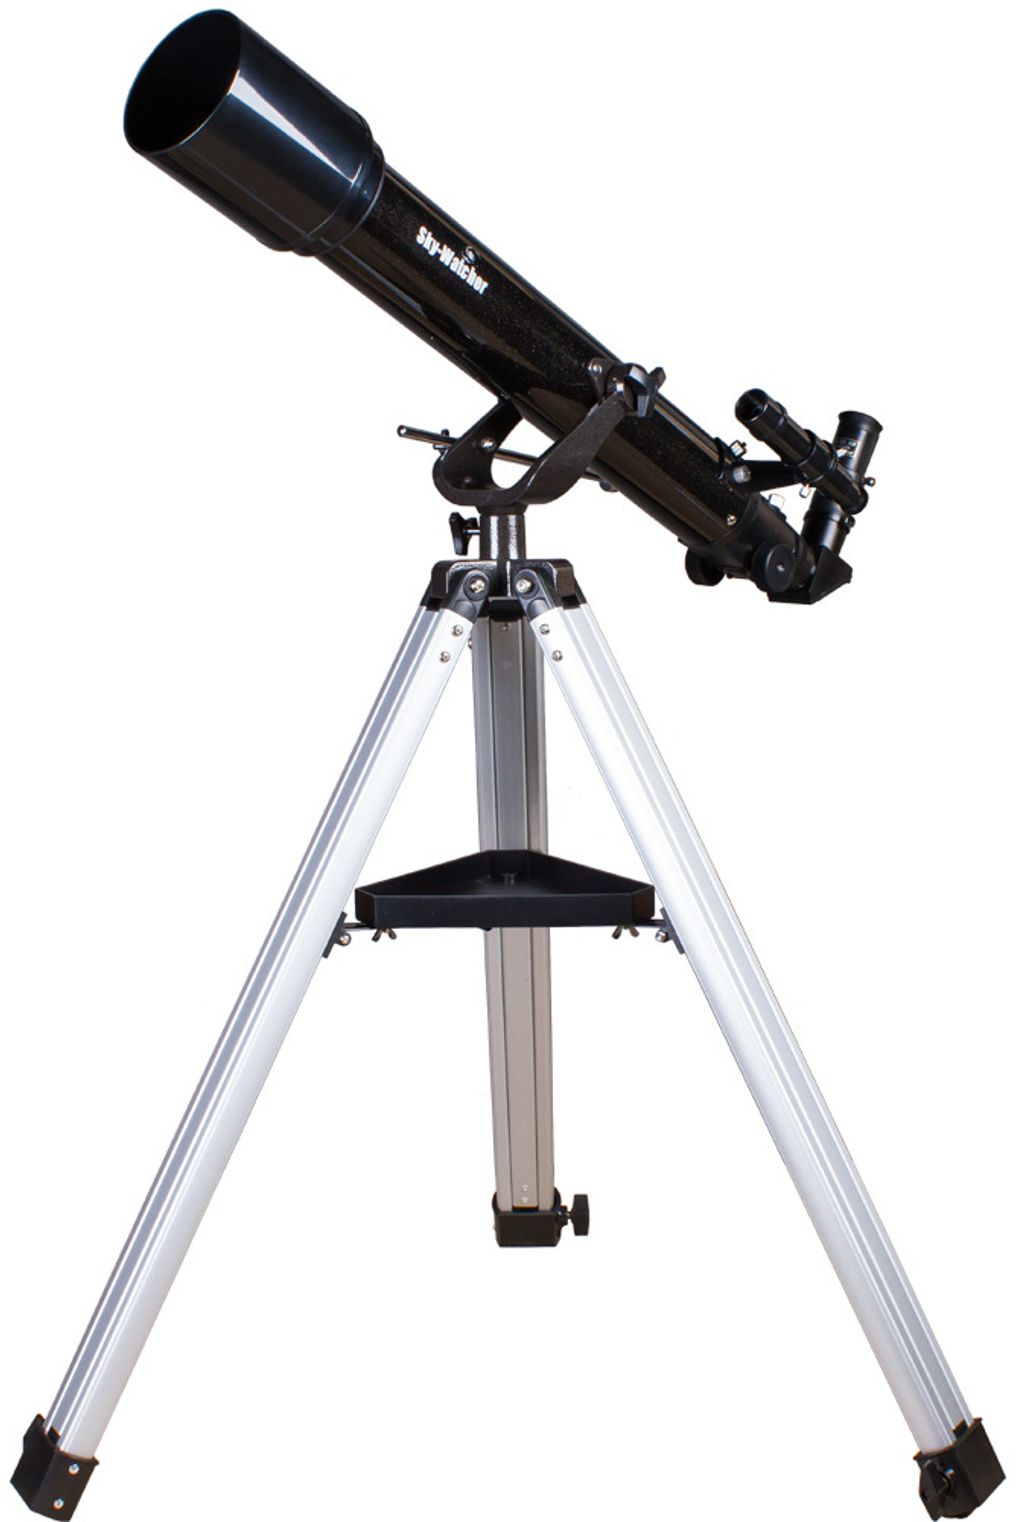 telescope-synta-sky-watcher-bk-707az2.jpg